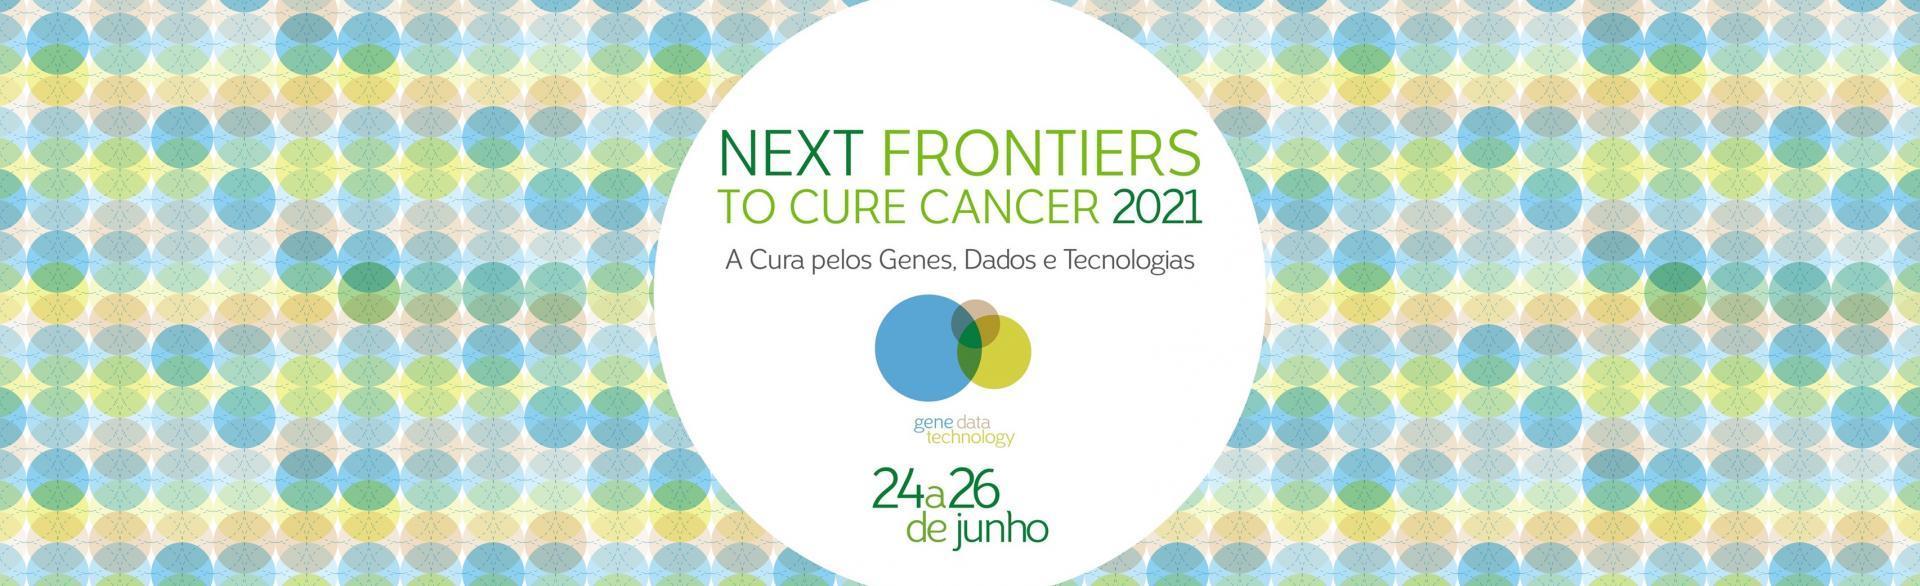 Logo Next Frontiers to Cure Cancer 2021 do A.C.Camargo Cancer Center sob um fundo colorido